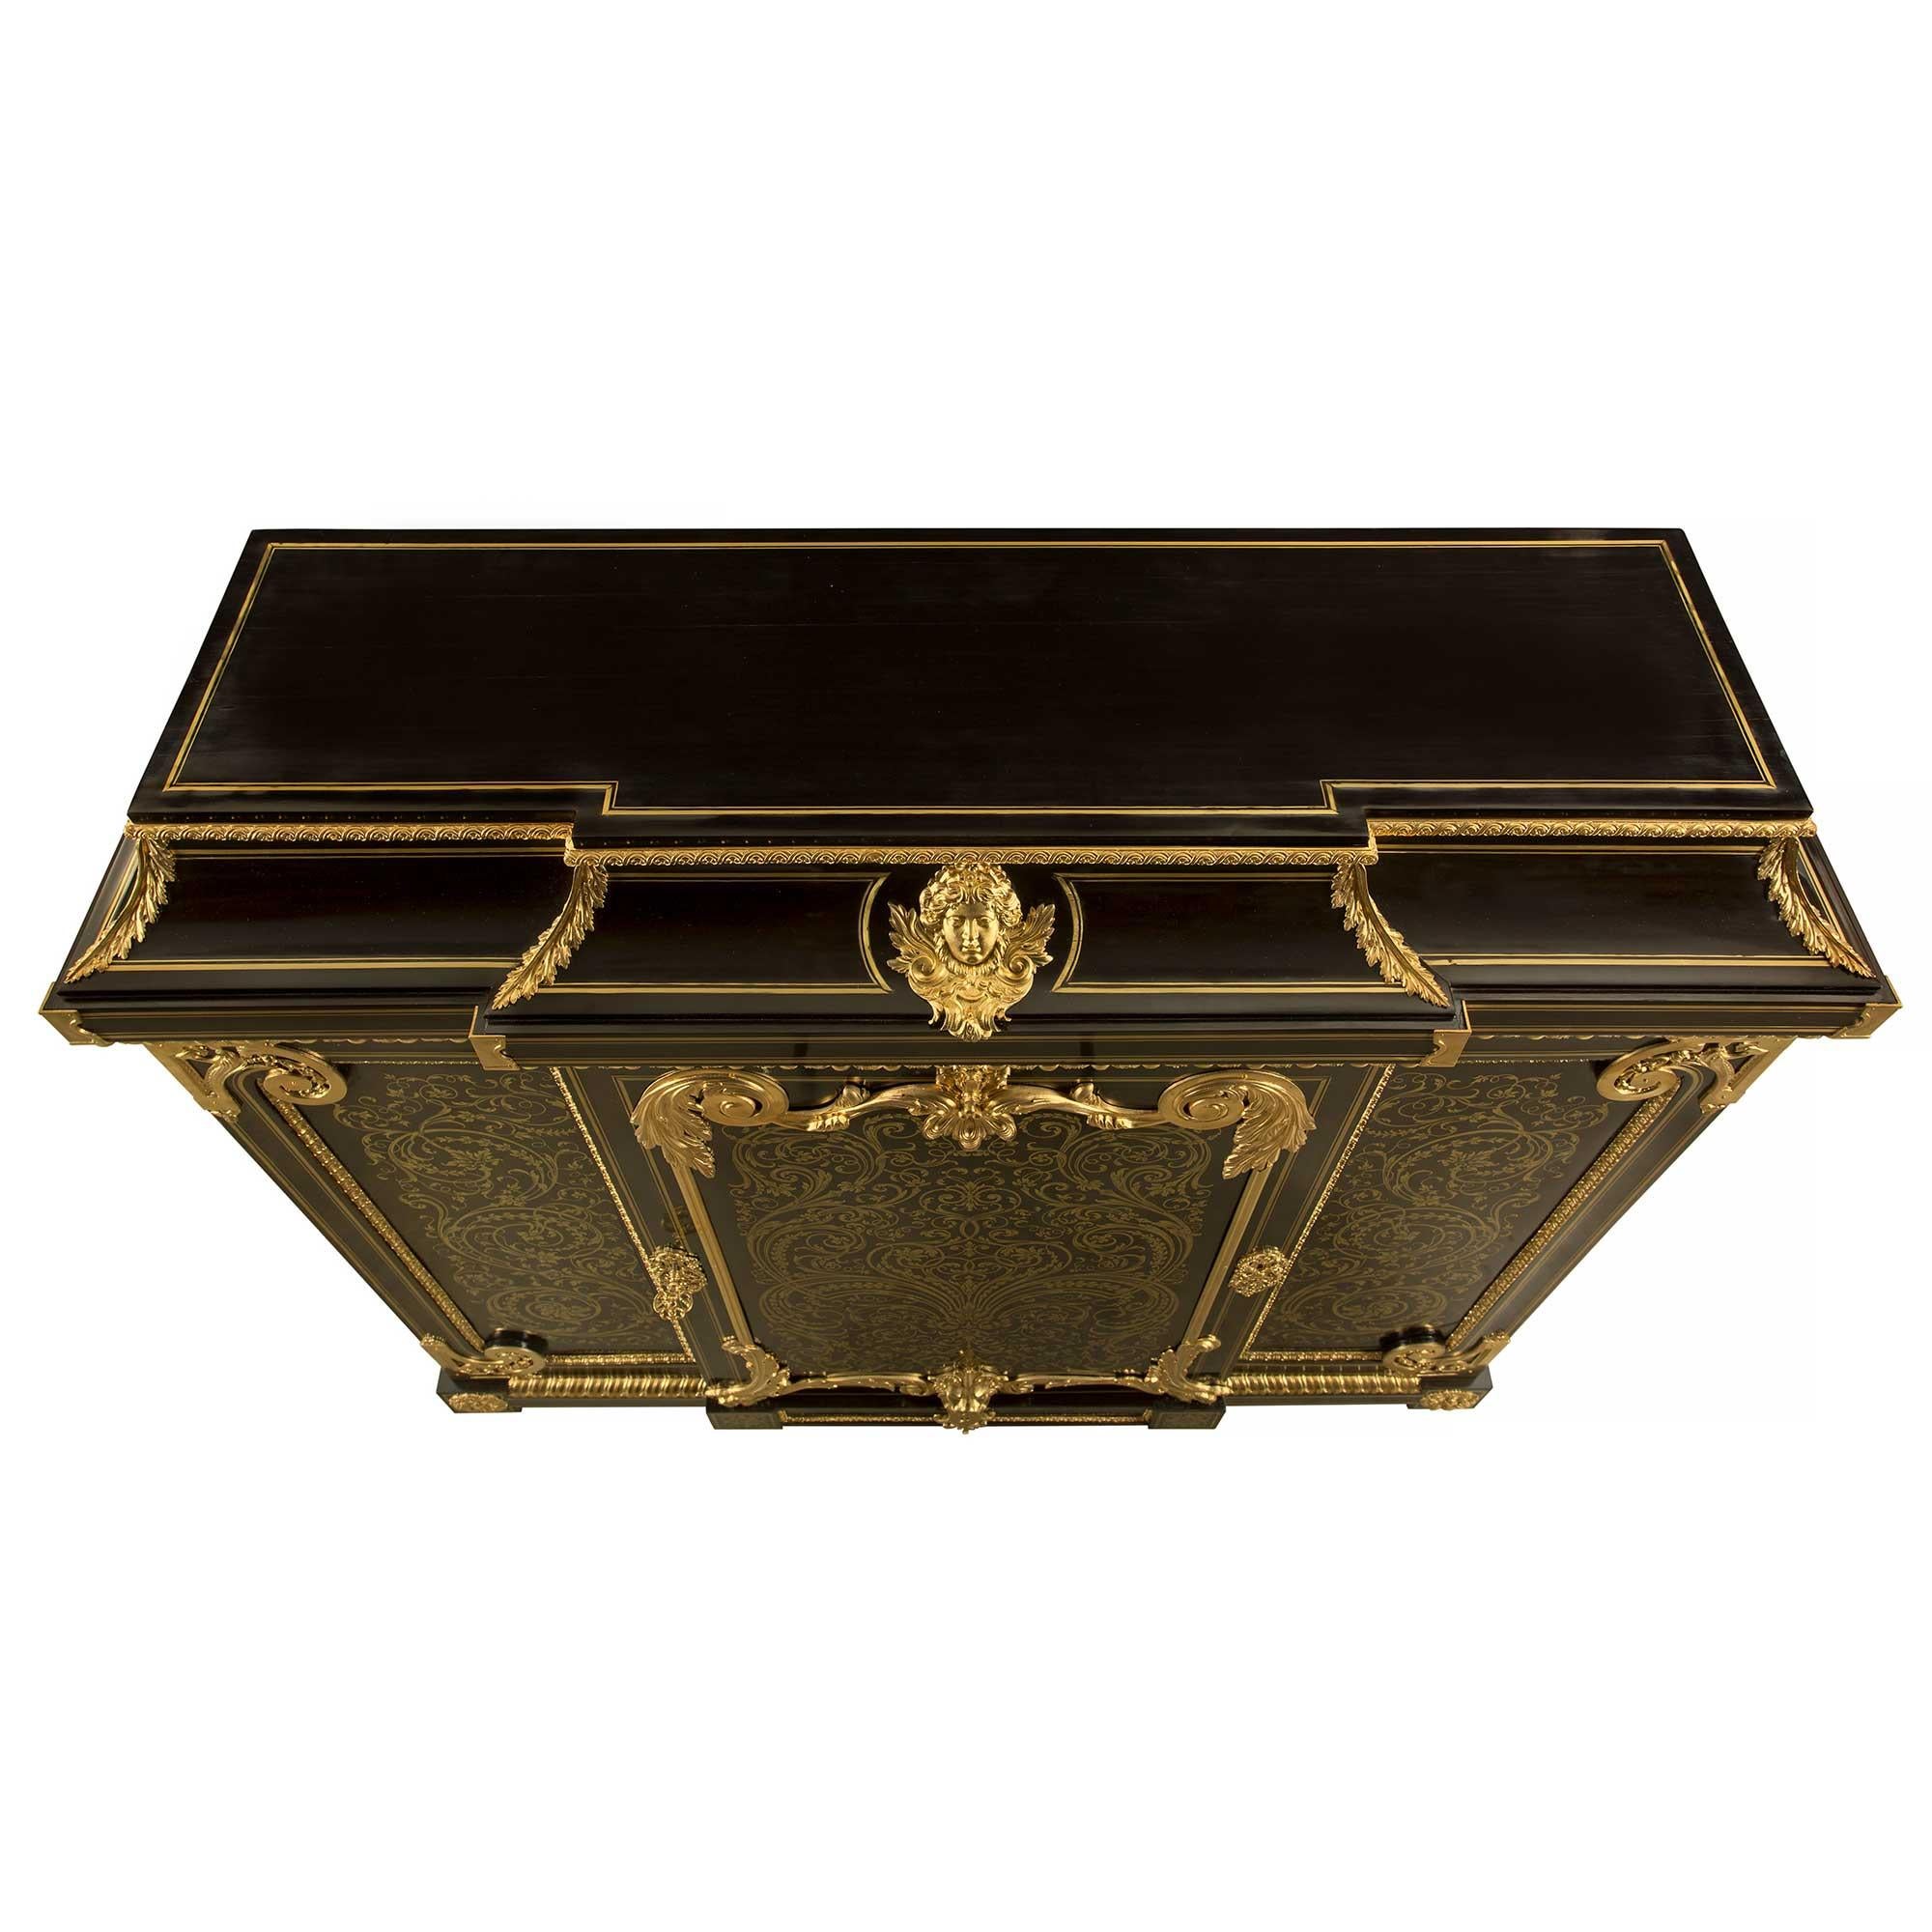 Un sensationnel cabinet à hauteur d'appui en ébène, laiton et bronze doré d'époque Napoléon III, attribué à Befort Jeune, d'une qualité exceptionnelle. Le meuble Boulle est surélevé par six superbes pieds cannelés en spirale en bronze doré, sous de